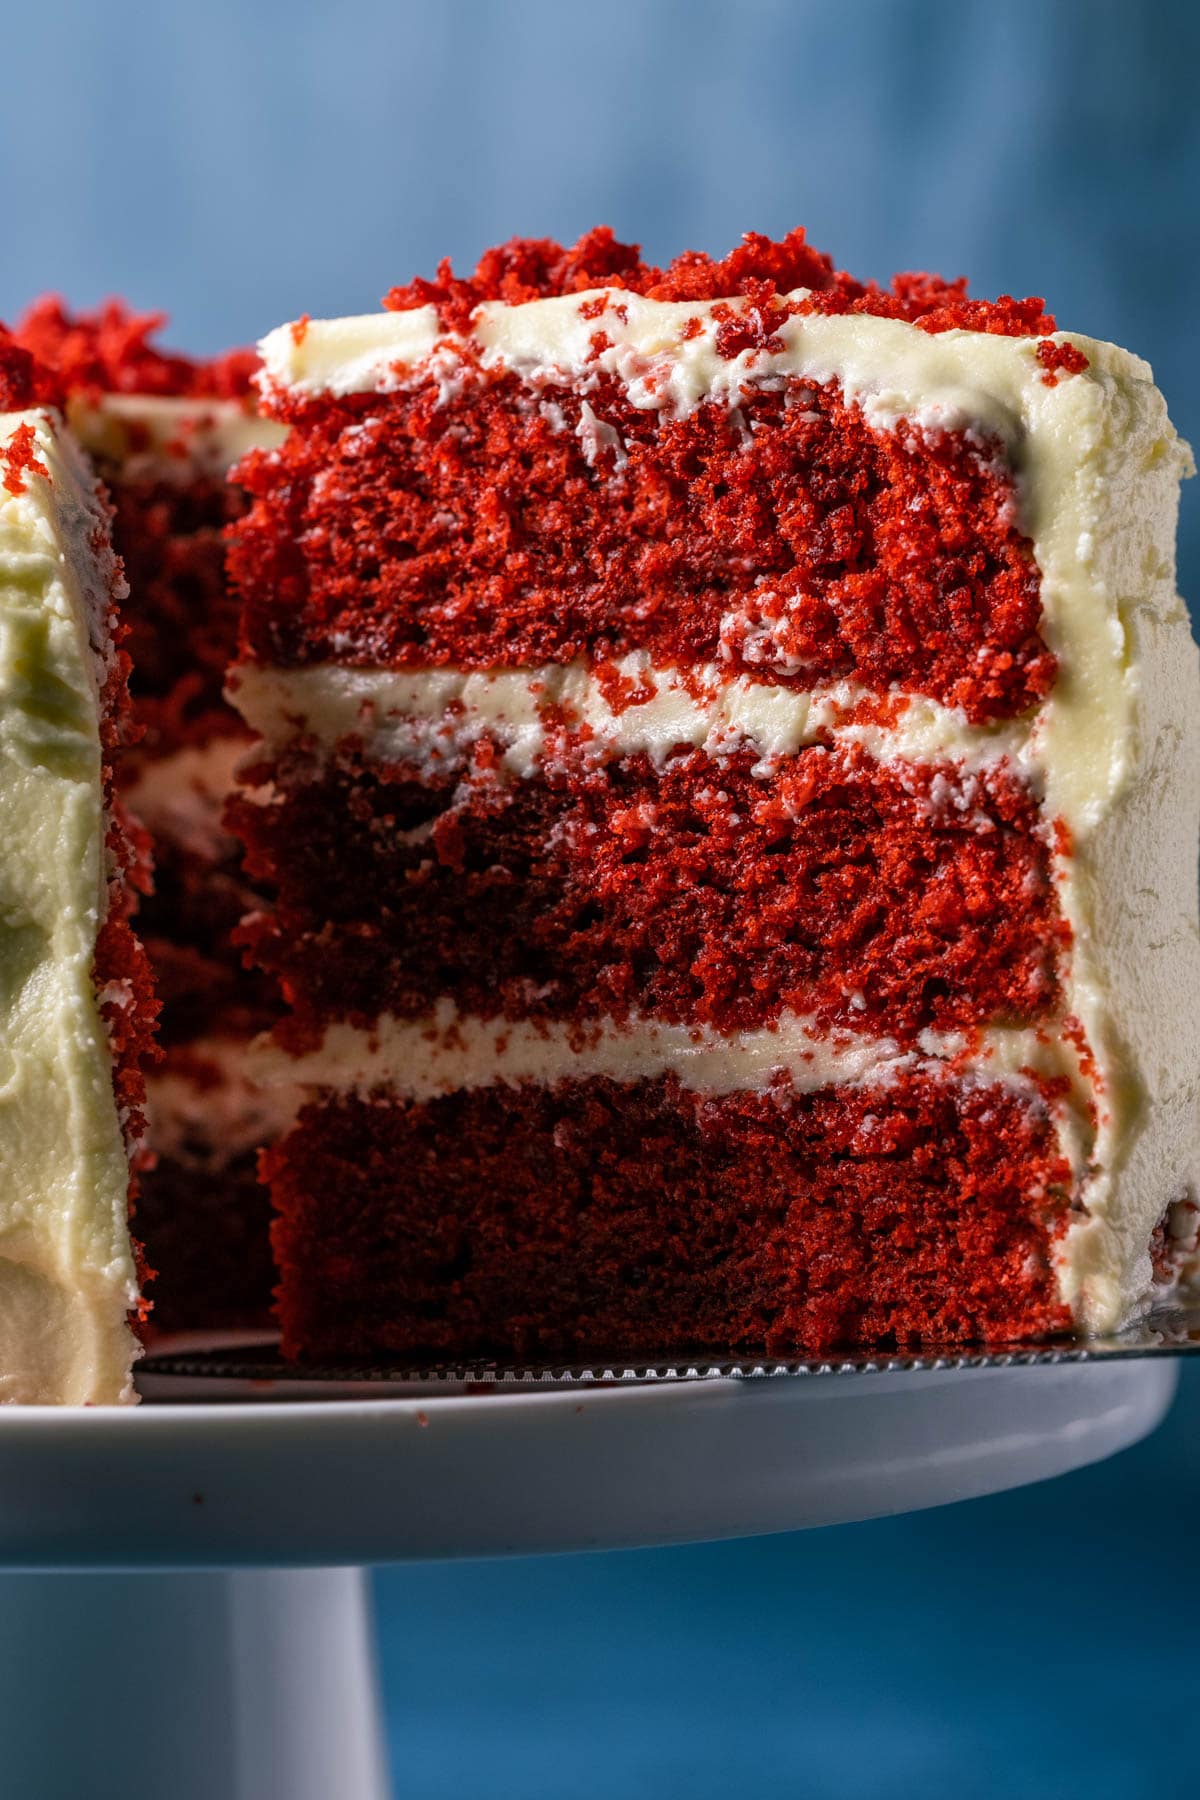 Sliced red velvet cake on a white cake stand.